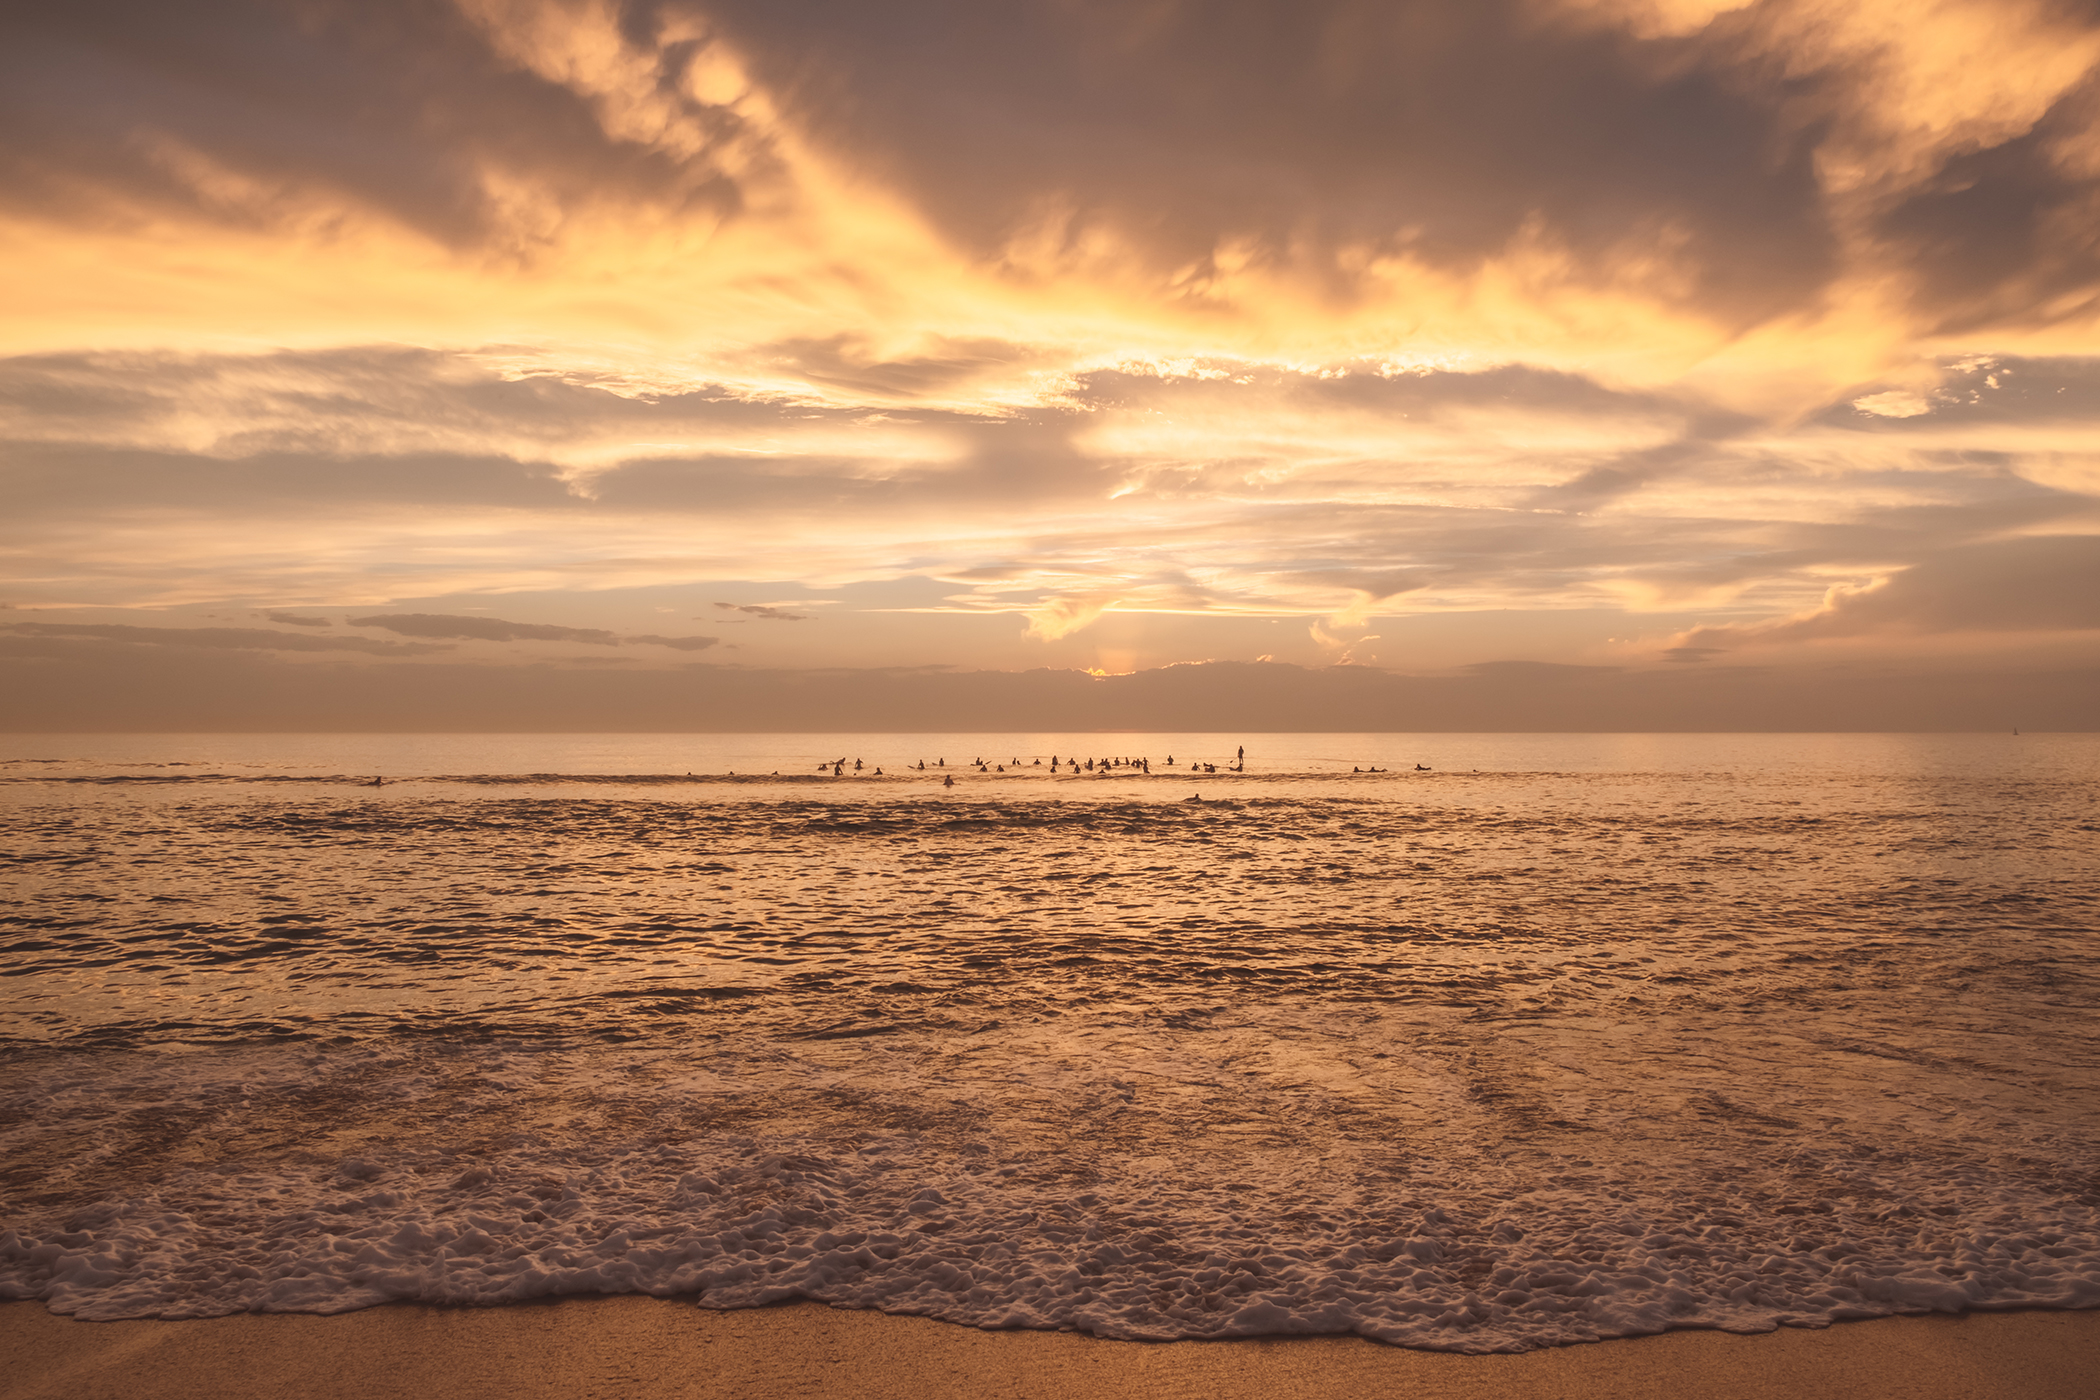 Surfers regardant le soleil se coucher à l'horizon